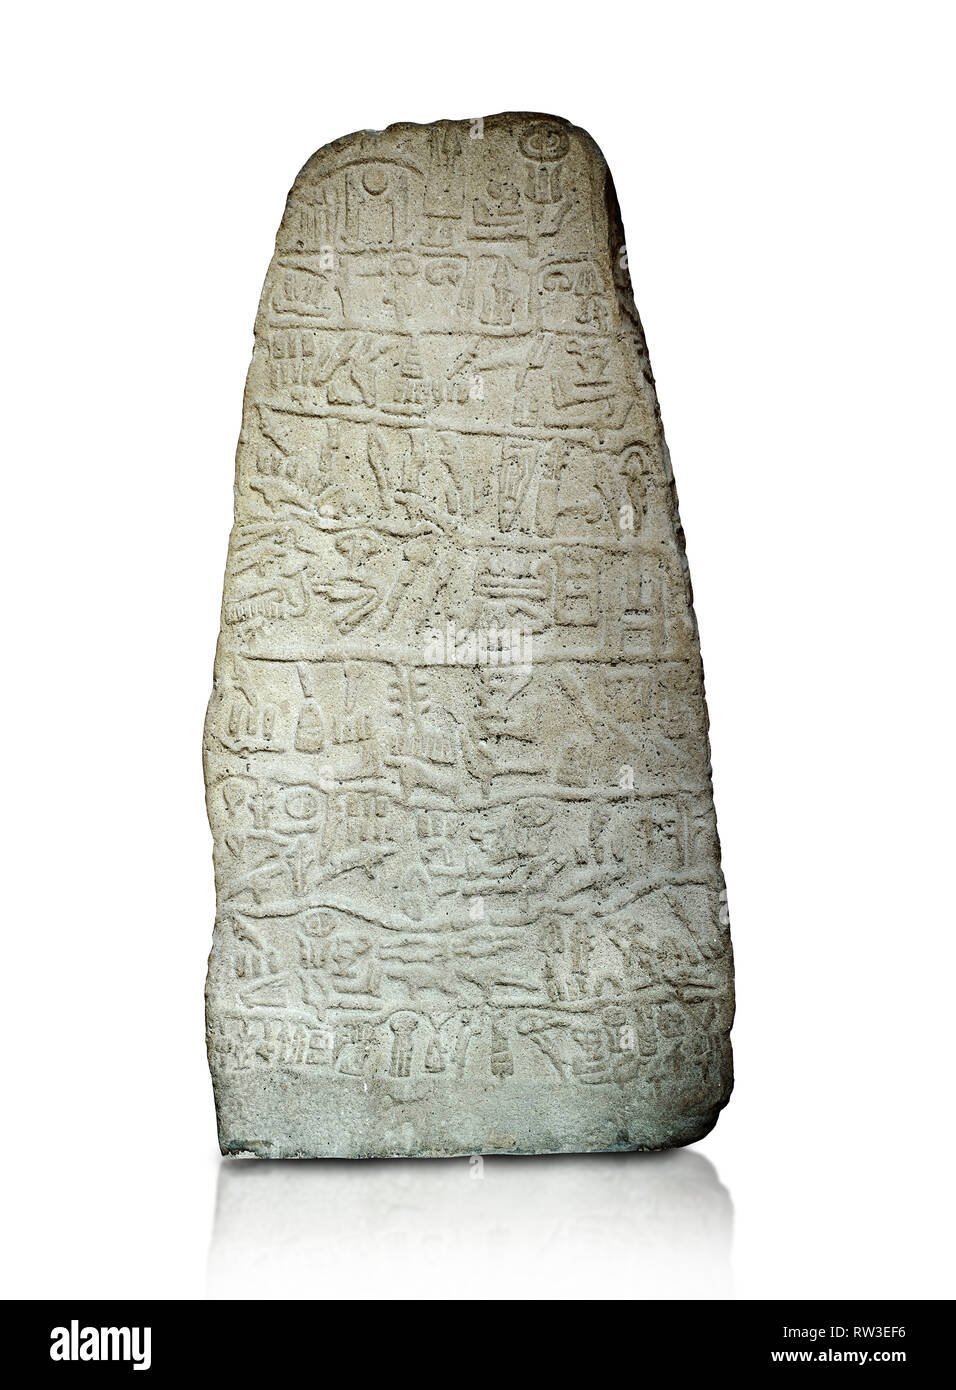 Neo Hittita periodo iscrizione geroglifica su una pietra orthostat - Anatolica Civilisations Museum, Ankara, Turchia. Contro uno sfondo bianco. Foto Stock